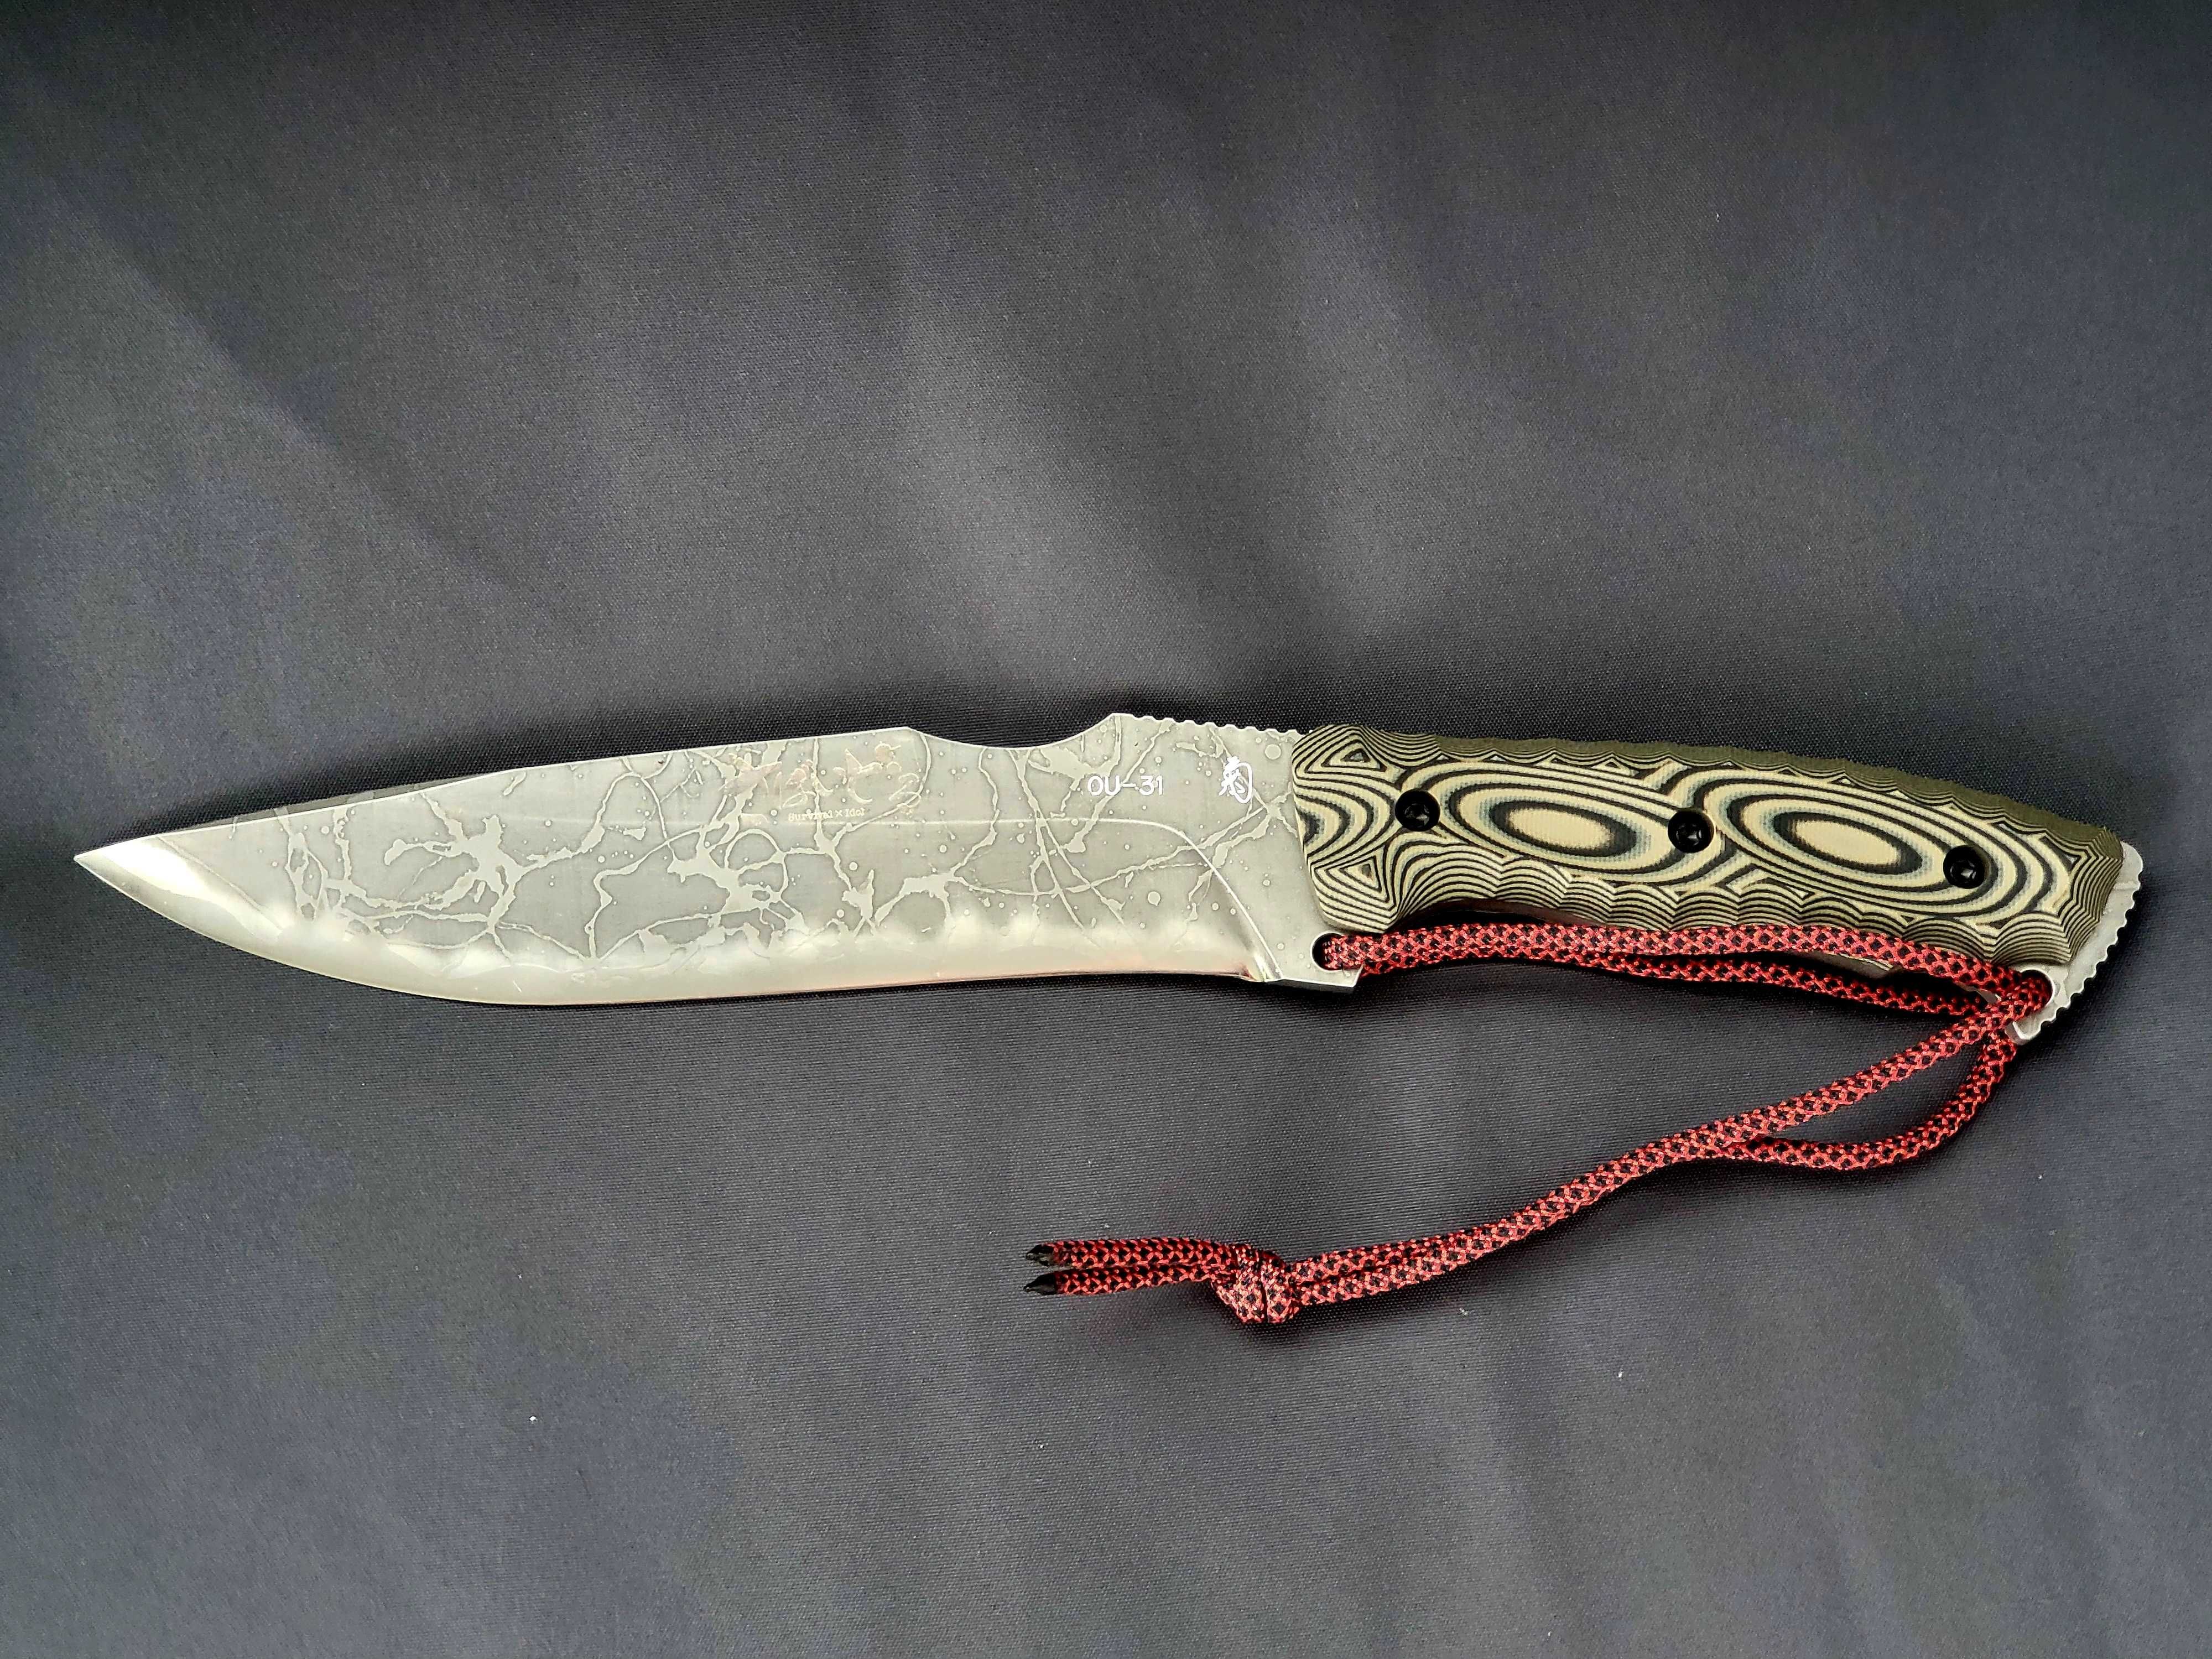 Japoński nóż survivalowy Kiku Matsuda Survidol LARGE KM10